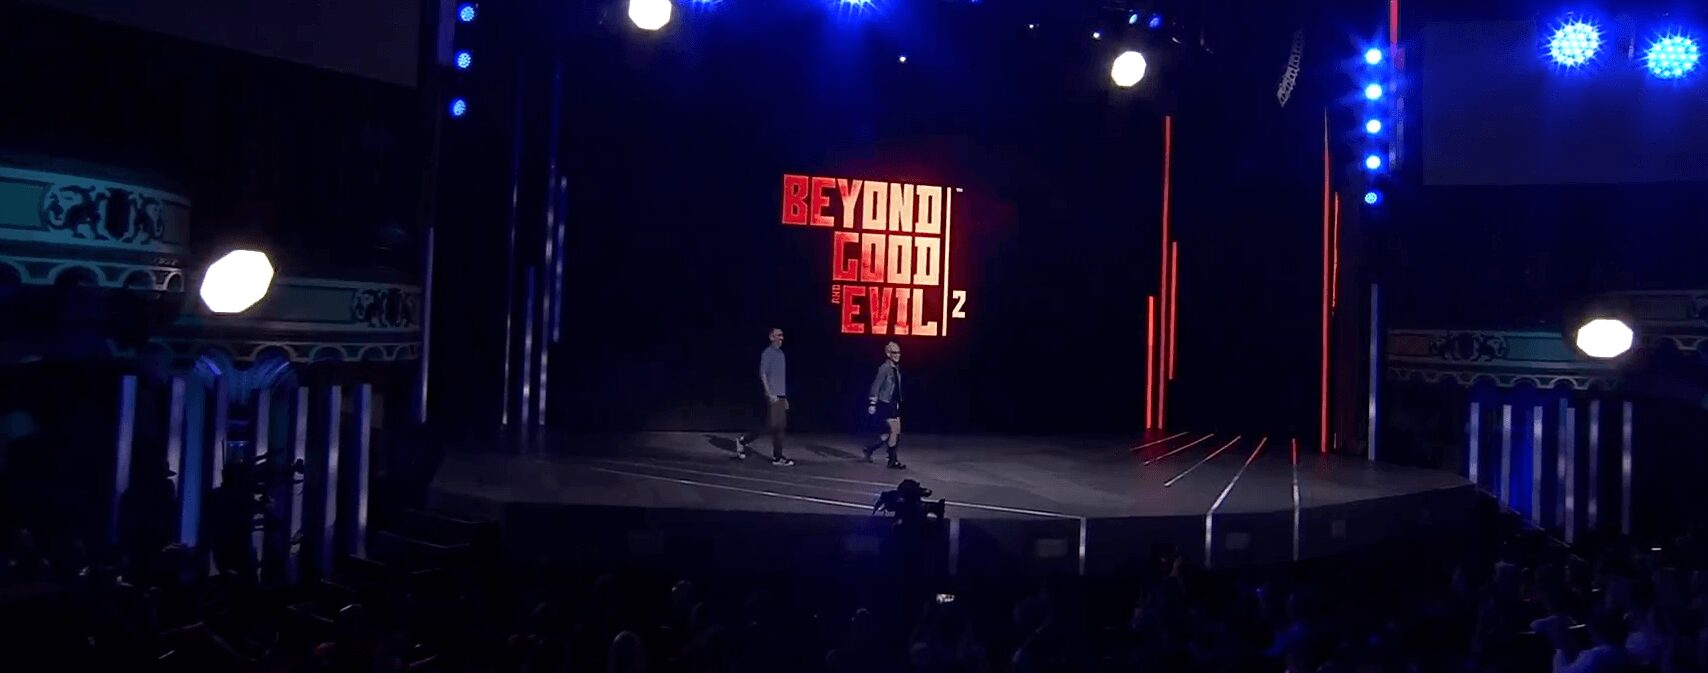 E32018 beyondgevil2 #E32018 : Ubisoft fait le show avec Assassin’s Creed Odyssey et The Division 2 Assassin's Creed